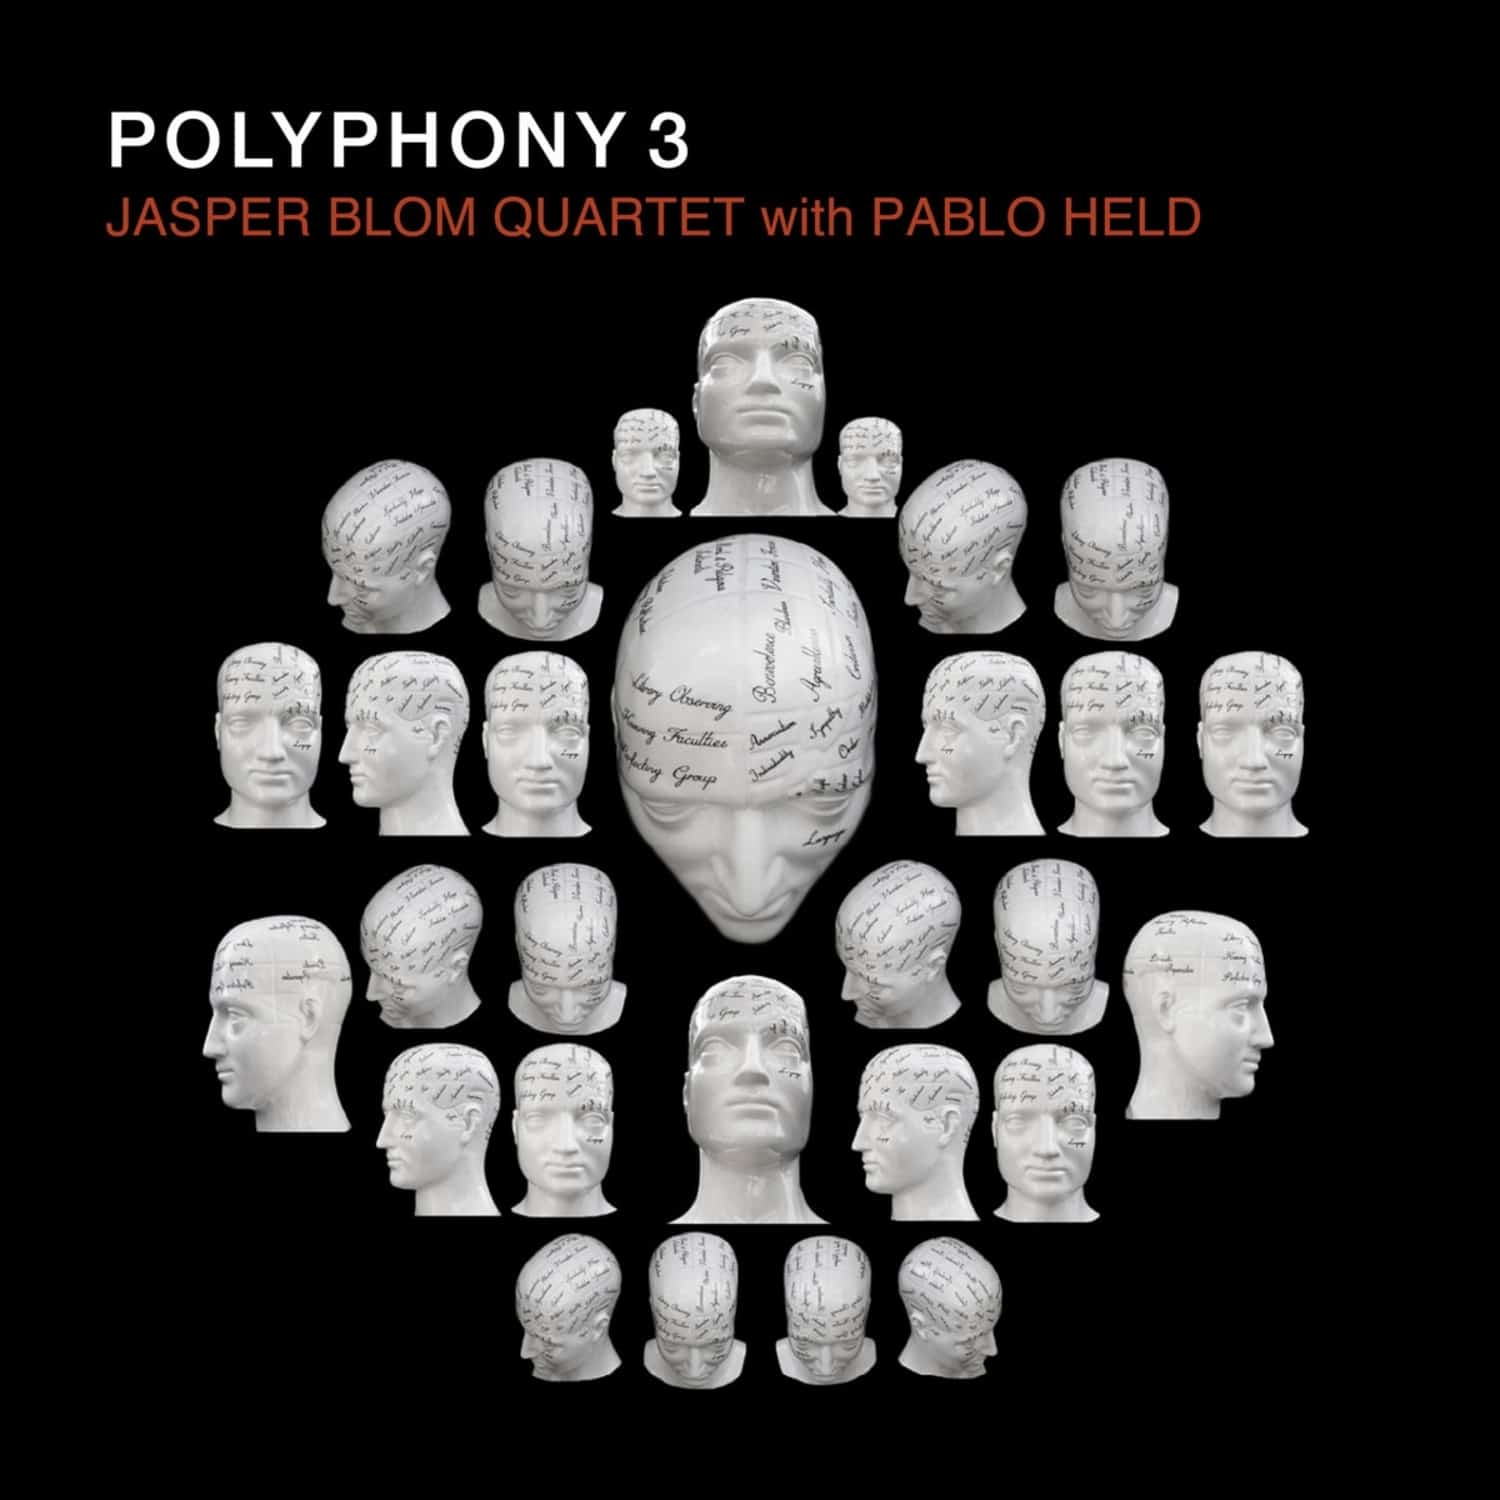 Jasper Blom Quartet - POLYPHONY 3 